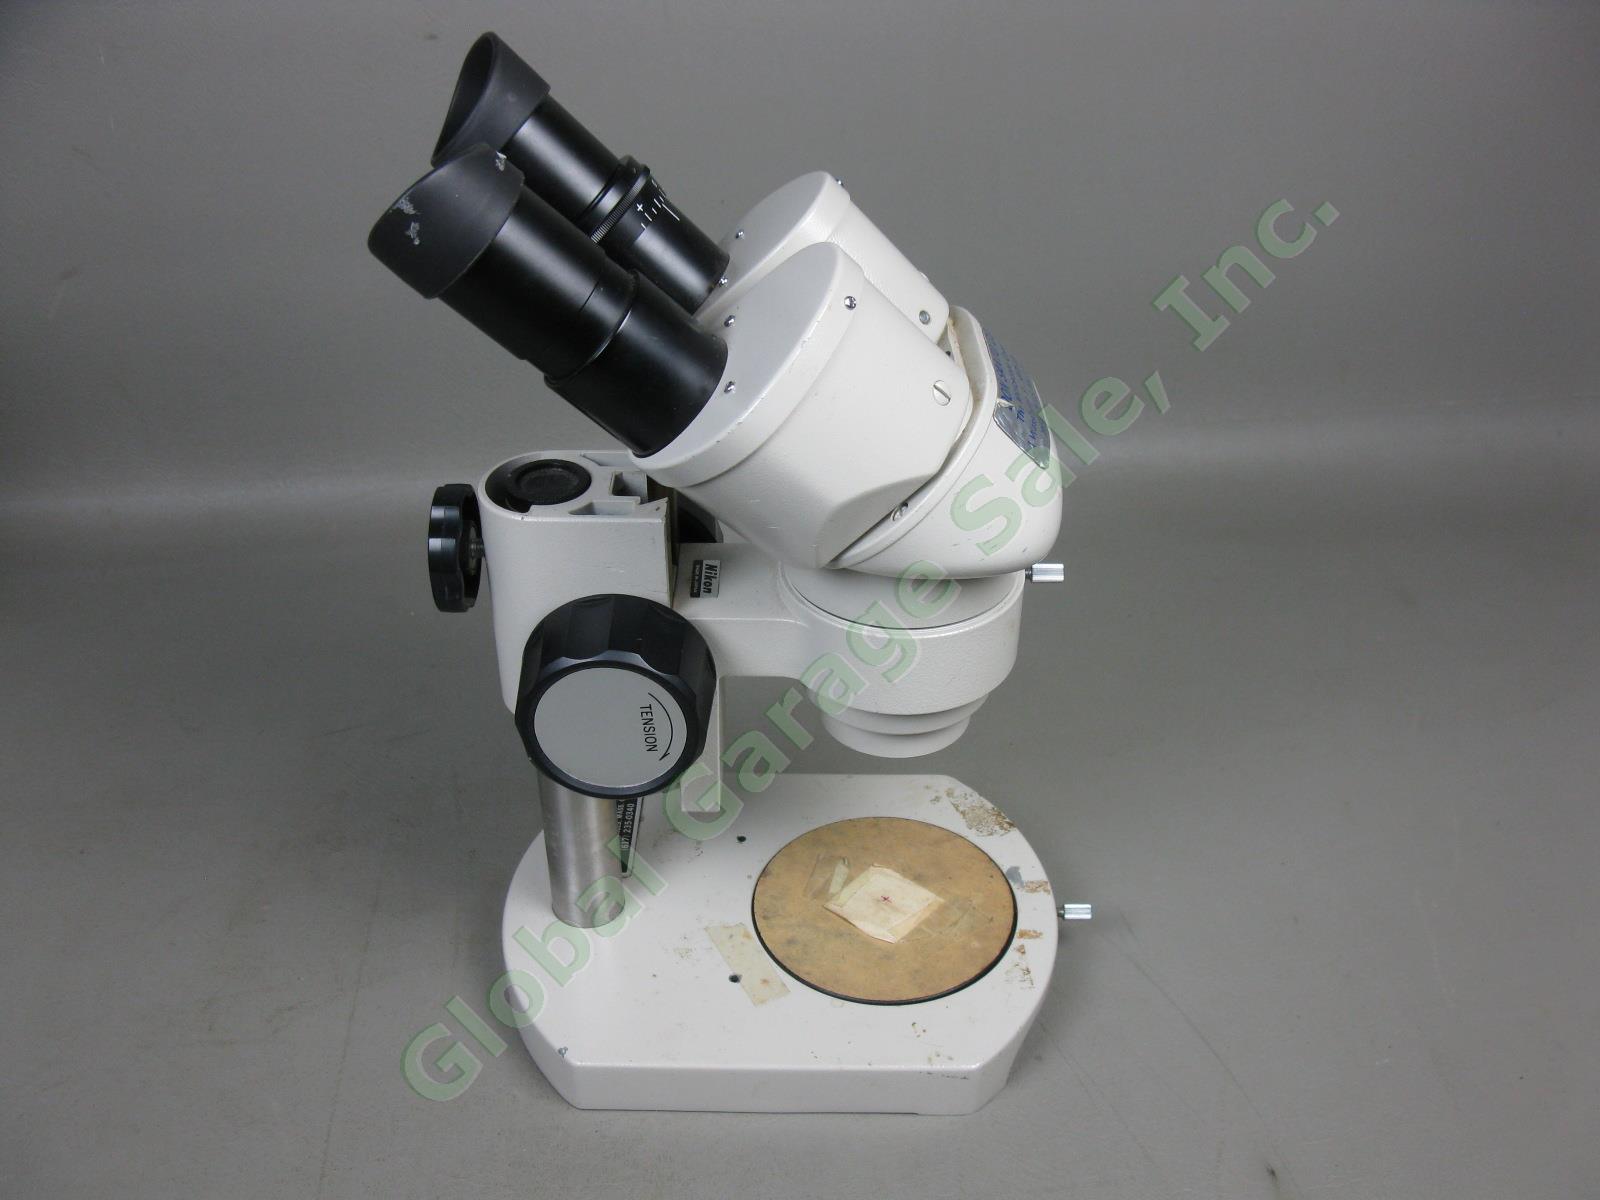 Nikon OBJ.2x Binocular Microscope W/ 10x/20 Eyepieces Stand #217542 No Reserve! 6